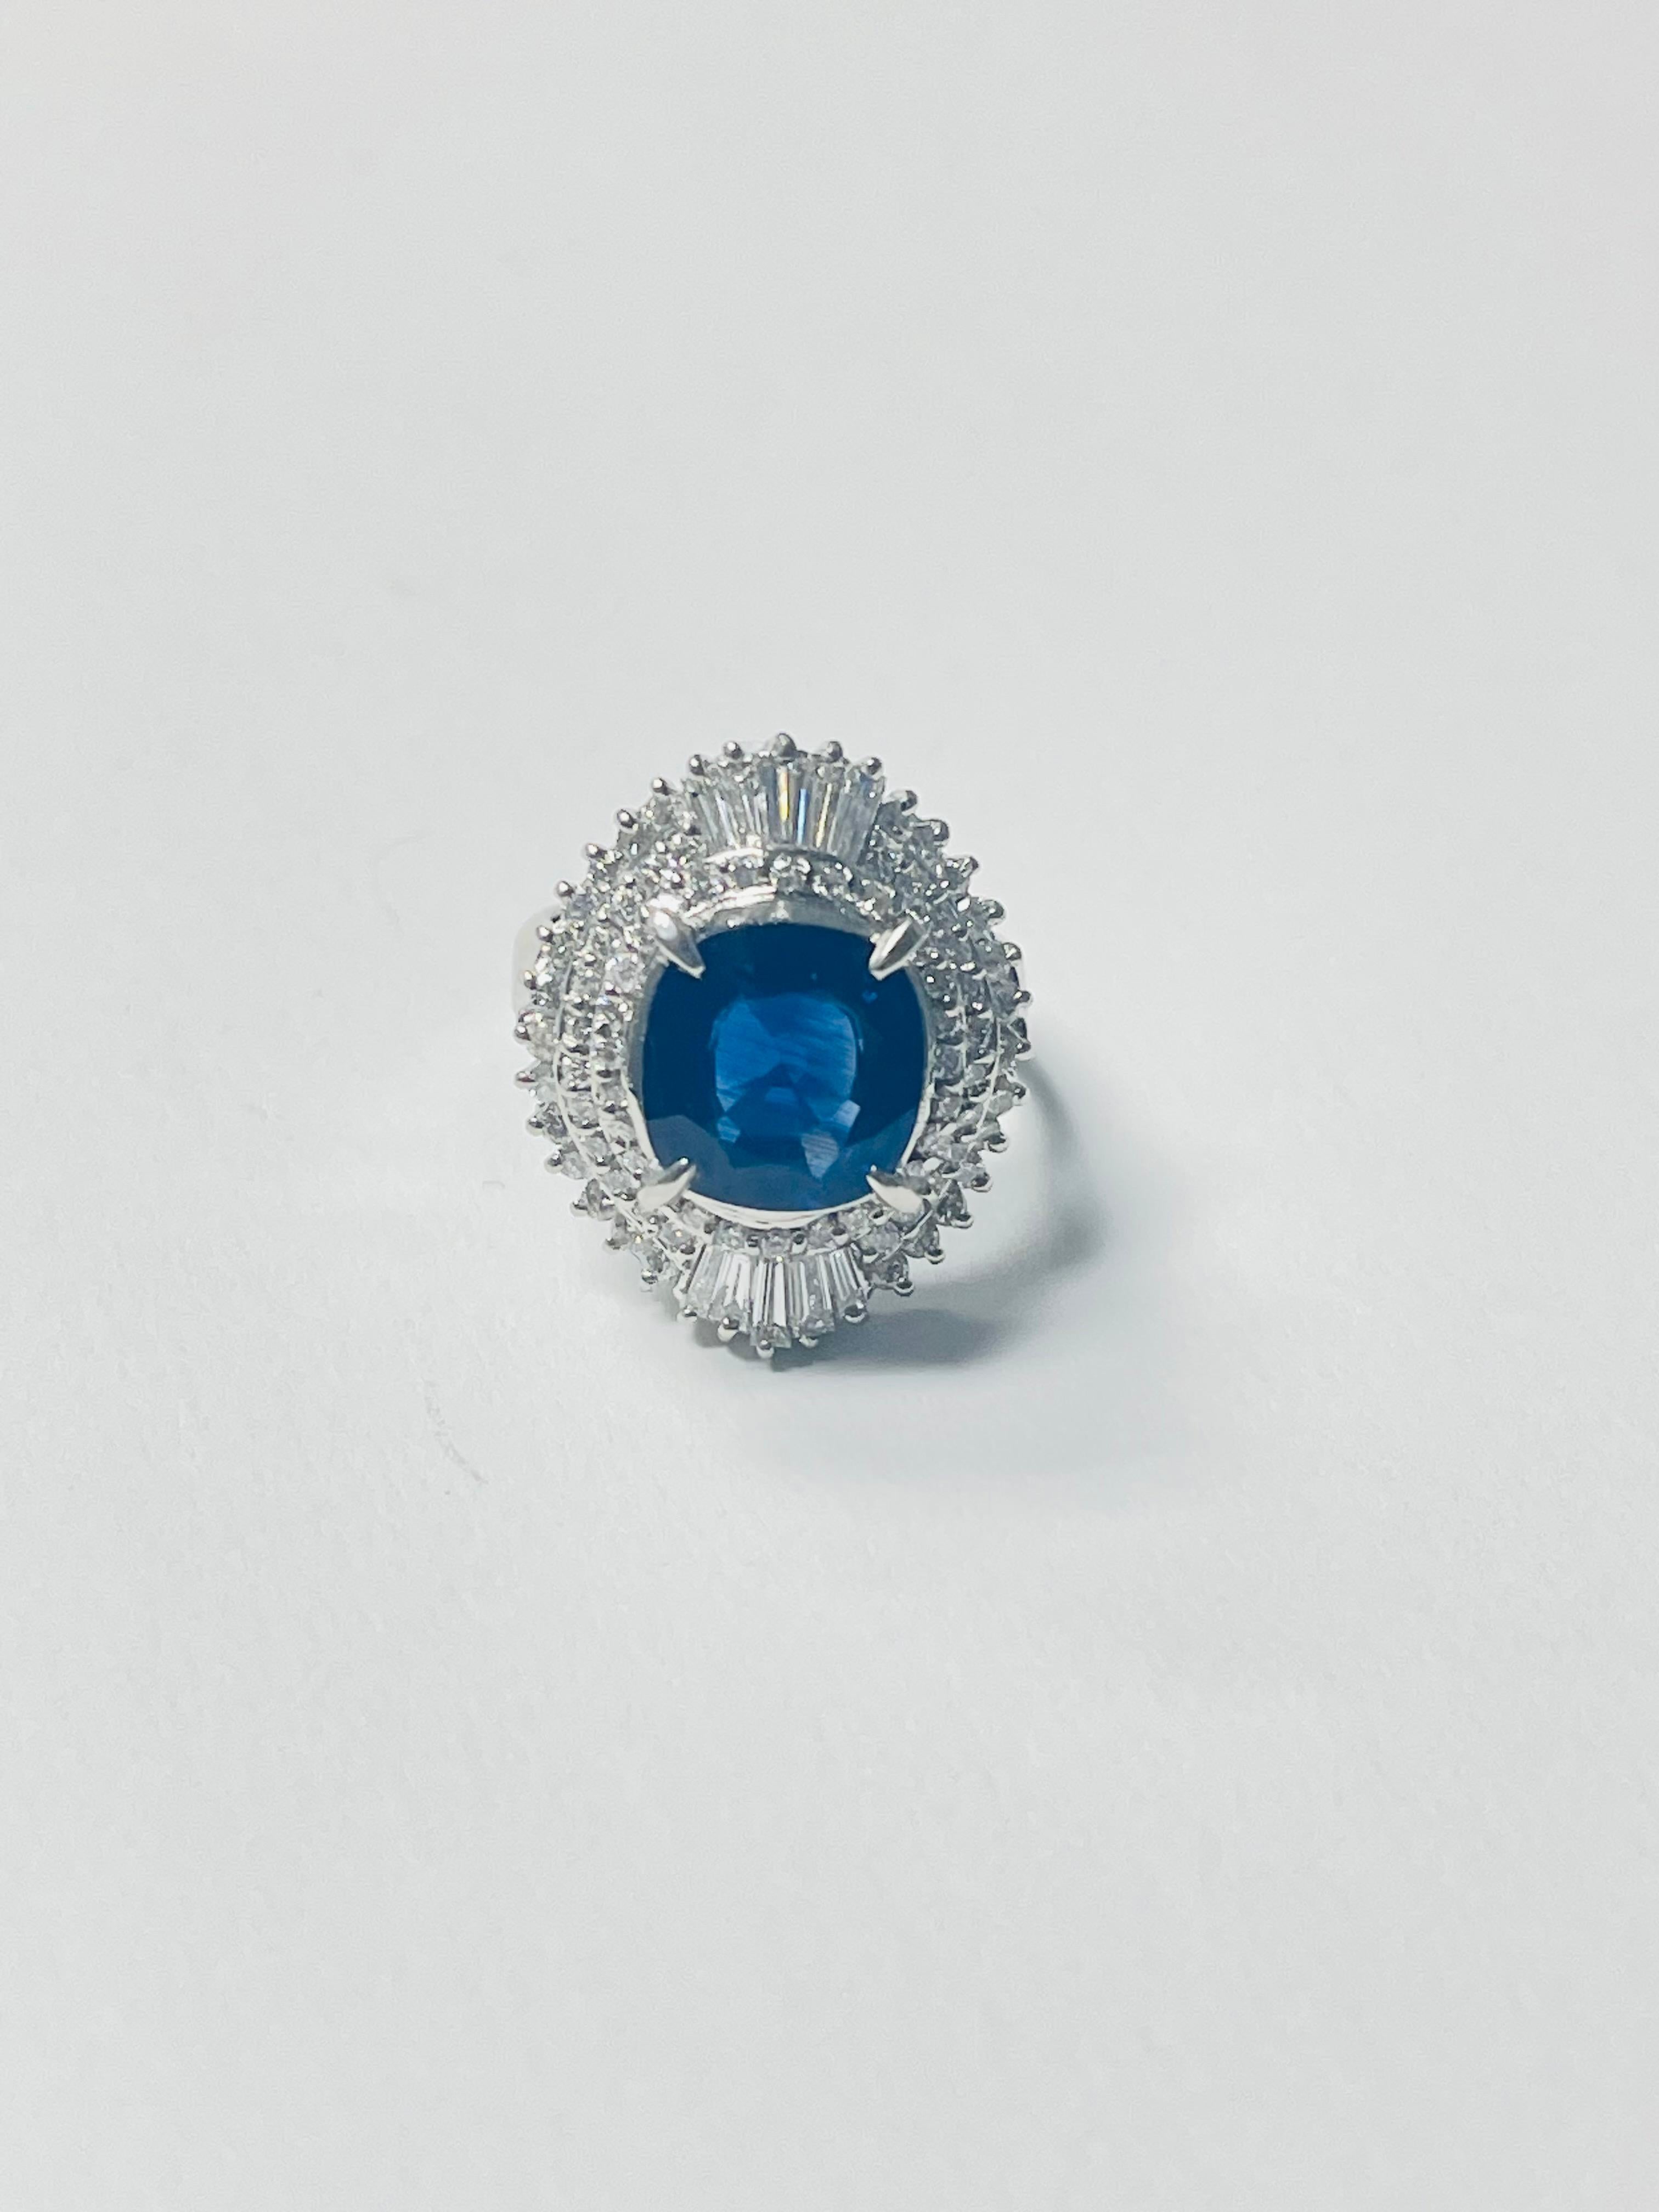 Verlobungsring mit blauem Saphir und Diamant, handgefertigt in Platin. 
Die Details sind wie folgt: 
Gewicht des blauen Saphirs: 3,28 Karat 
Gewicht des Diamanten: 1,06 Karat (Farbe GH und Reinheit VS) 
Metall : Platin 
Abmessungen: 9,2 mm x 8,9 mm